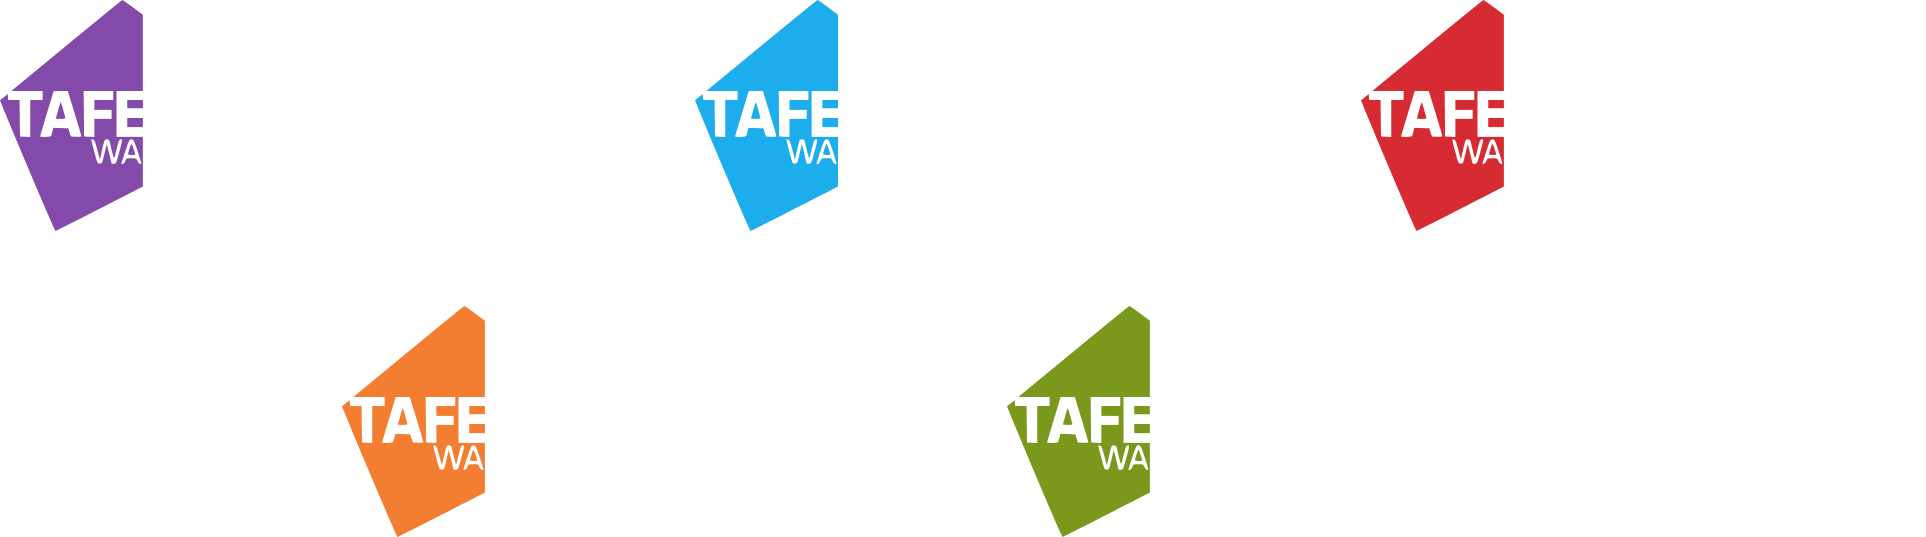 TAFE logos